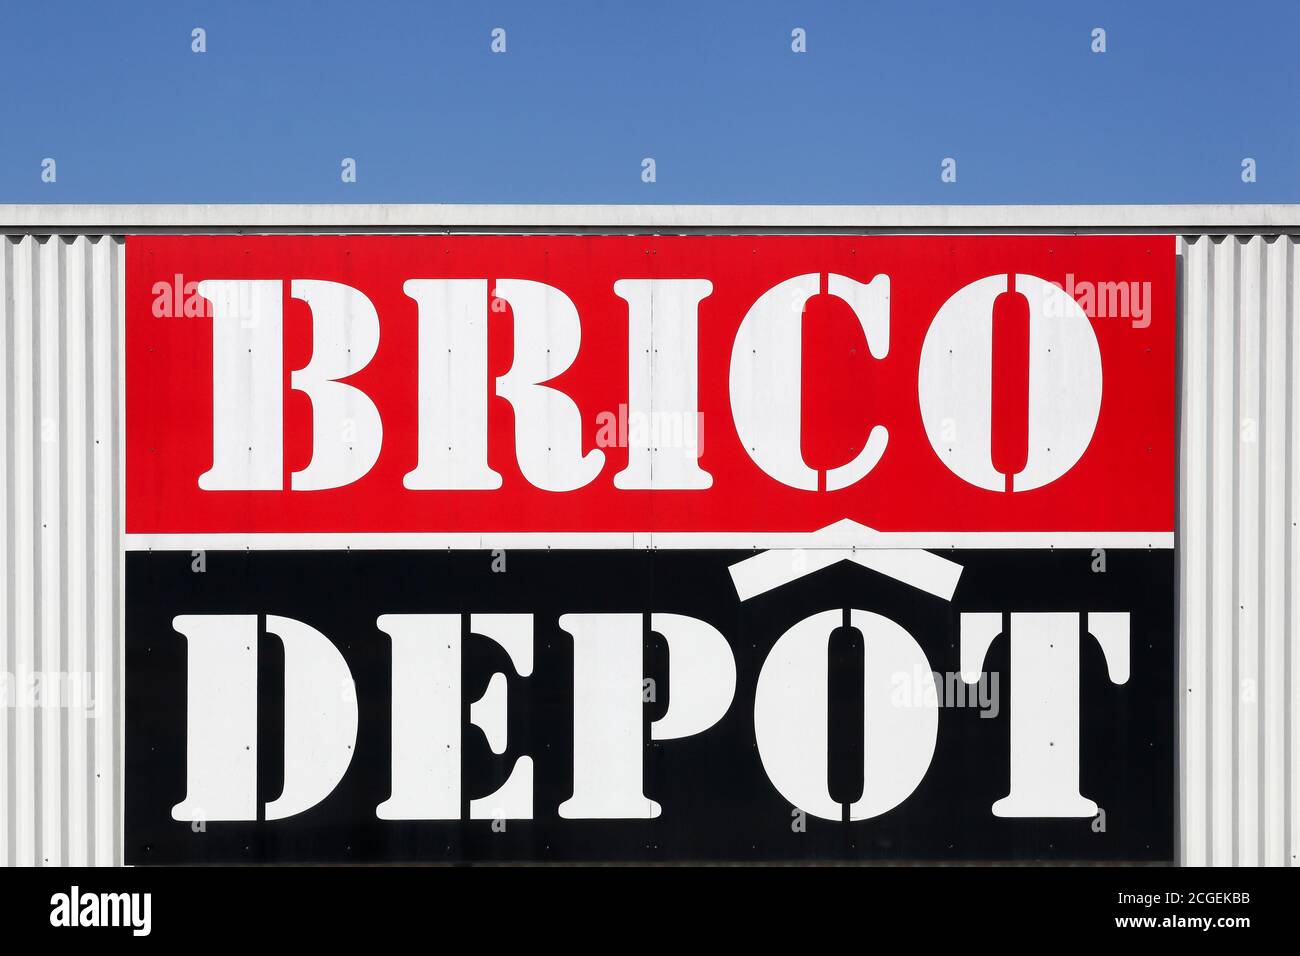 Villefranche, Frankreich - 23. August 2020: Brico Depot Logo an einer Wand. Brico Depot ist eine französische Kette von DIY und Home Improvement Stockfoto